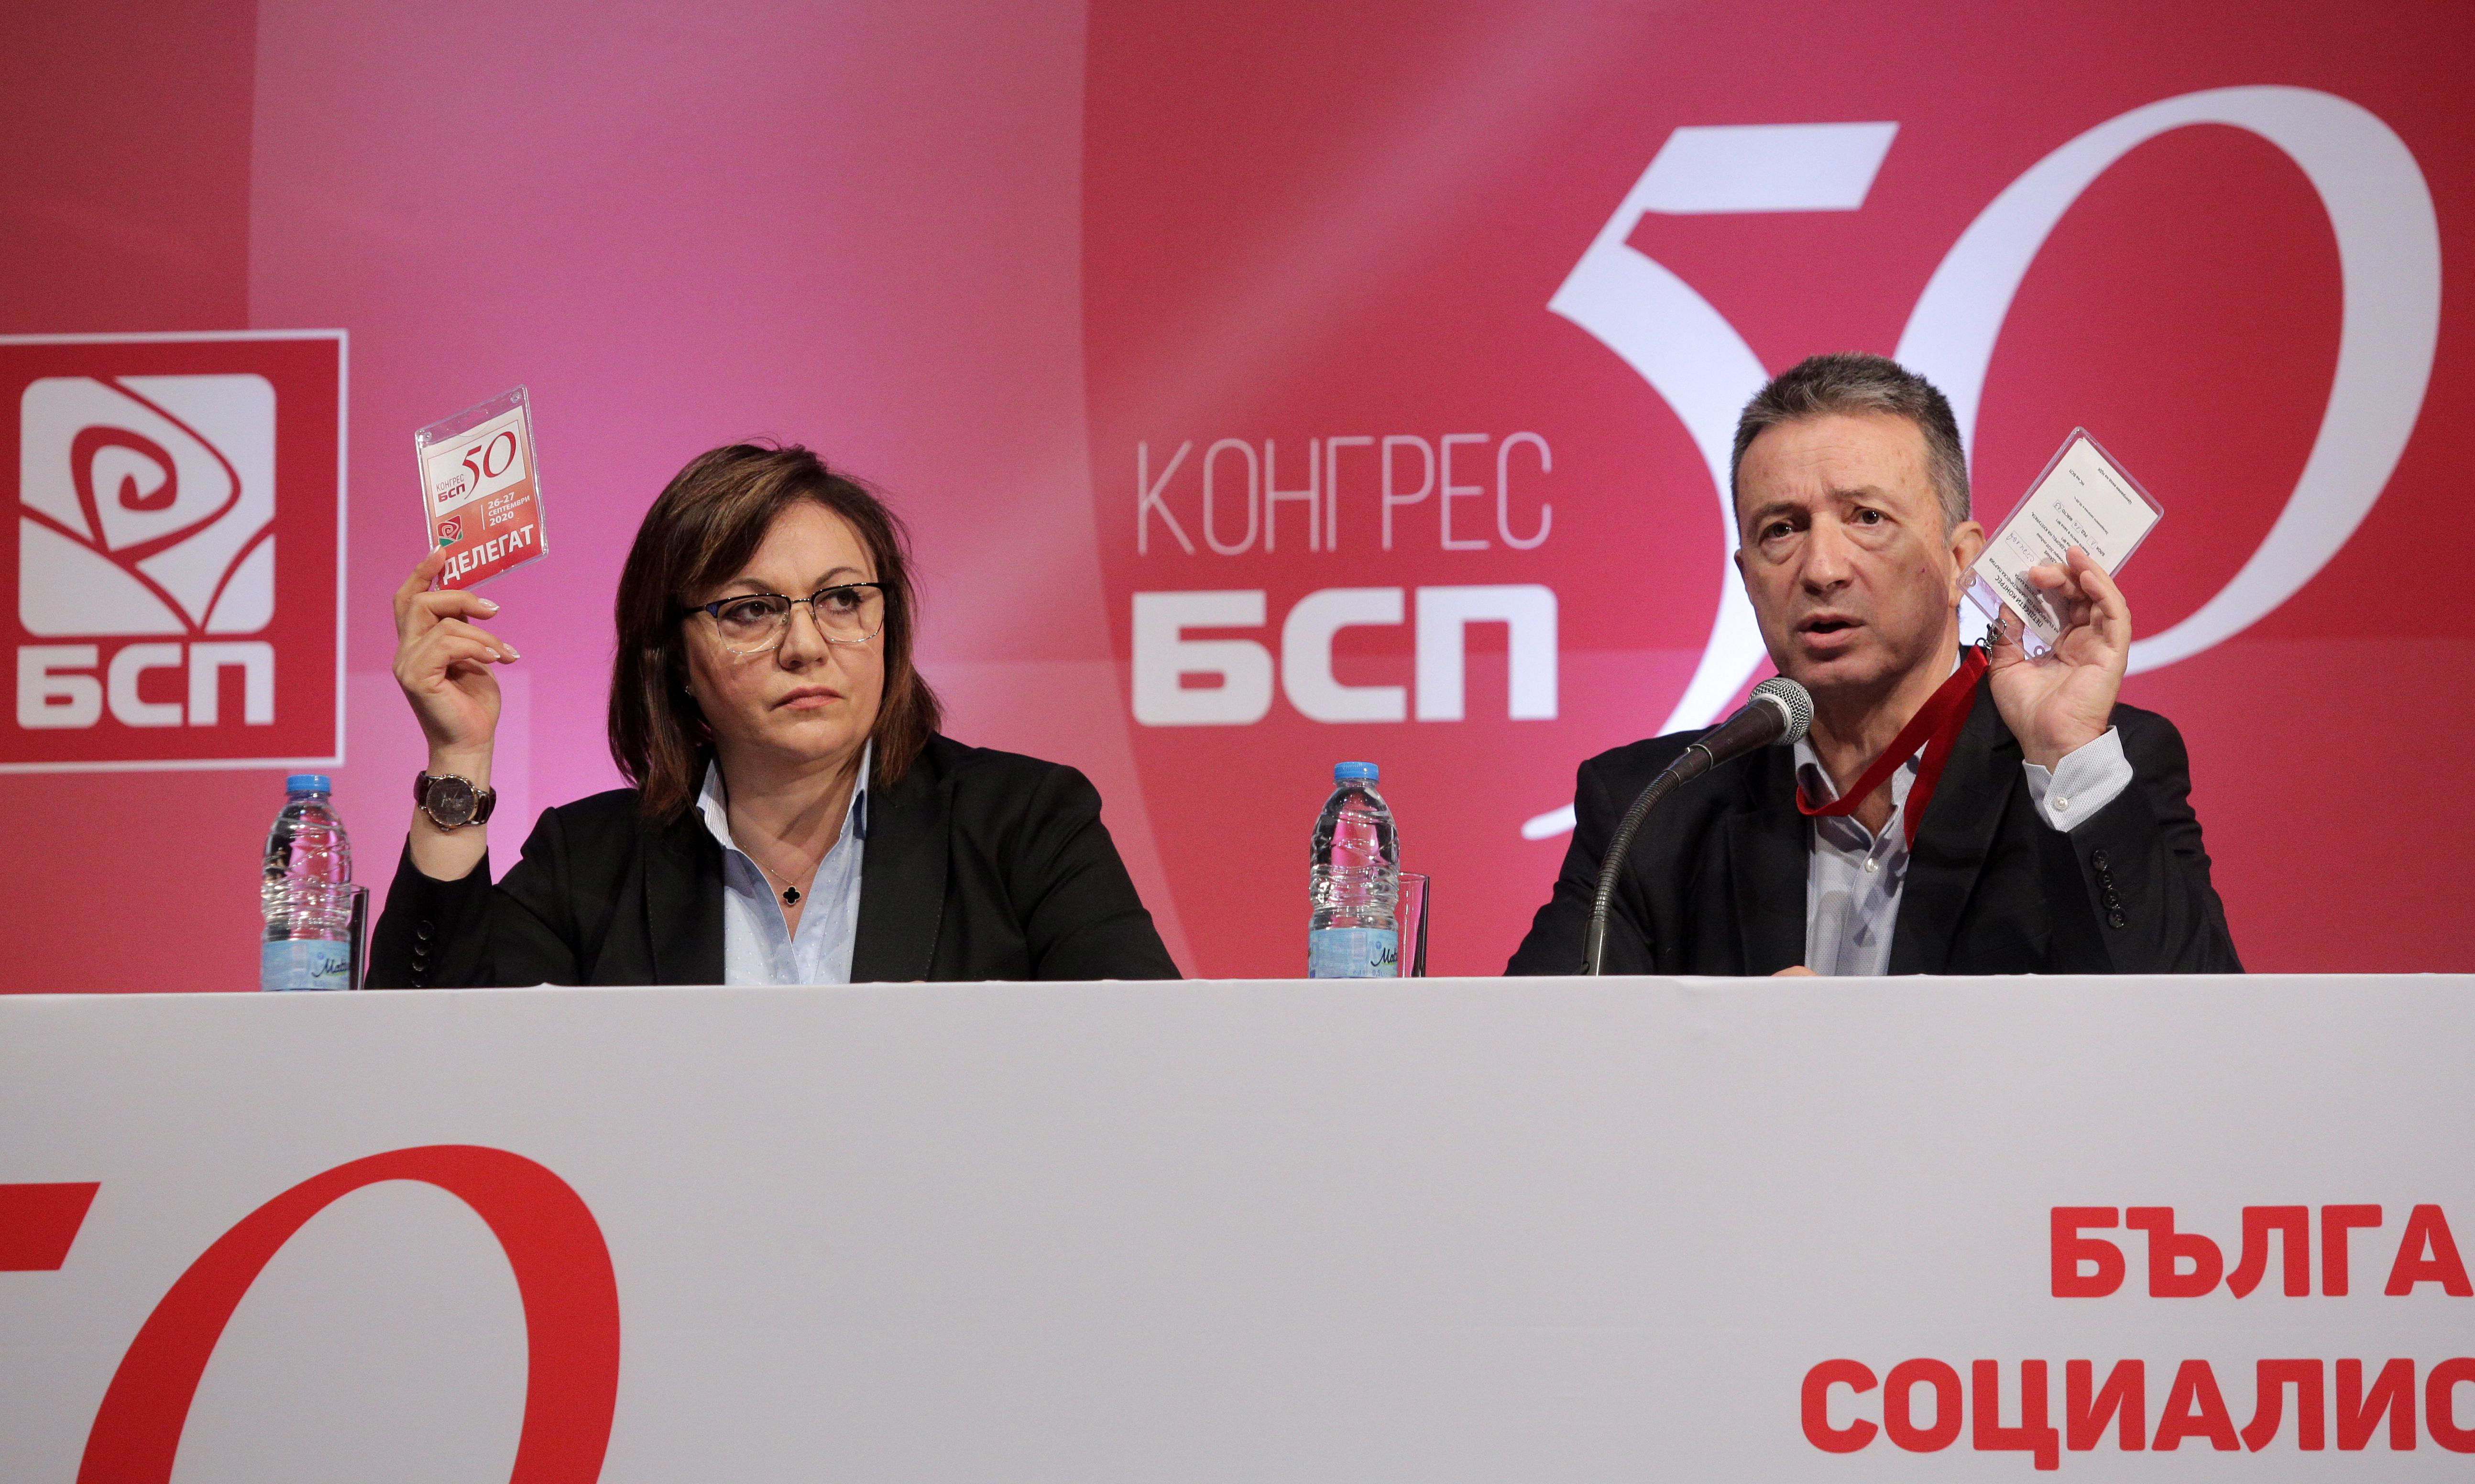 50-ият конгрес на БСП избра Националния съвет на партията. В